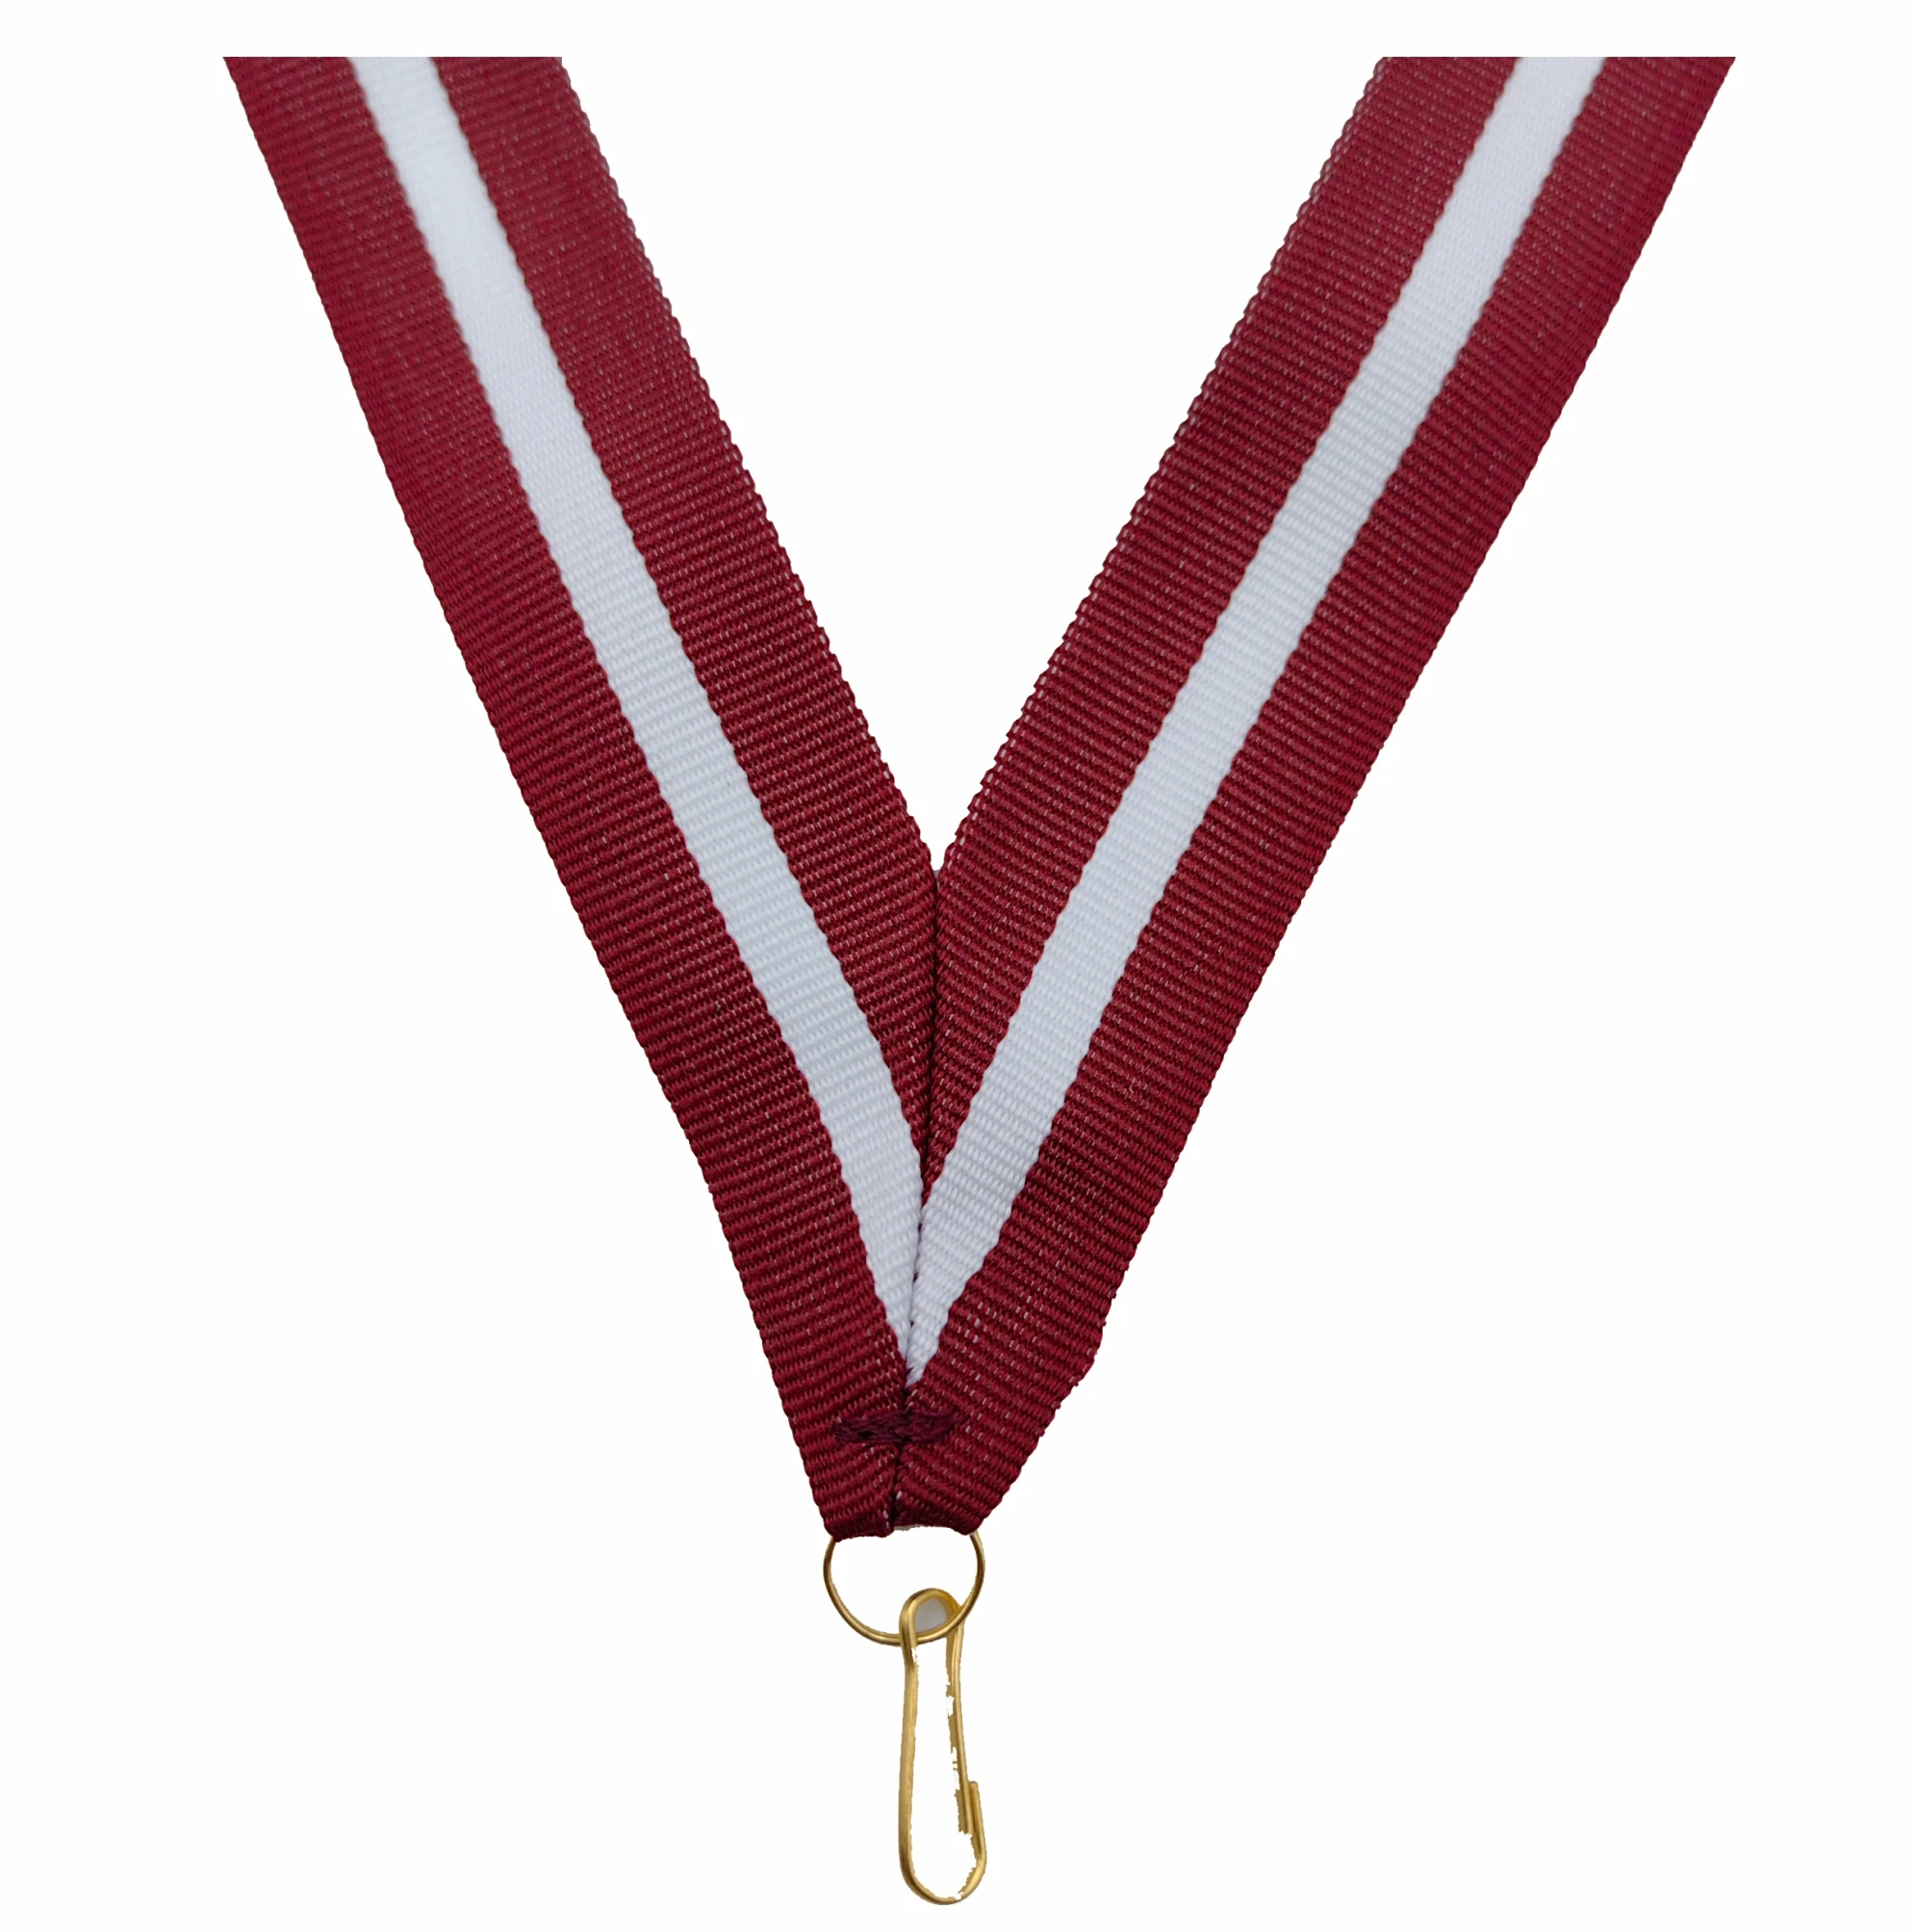 Medal Ribbons Color Ribbons Ribbon With Hook Medal Lanyard - Buy Medal ...